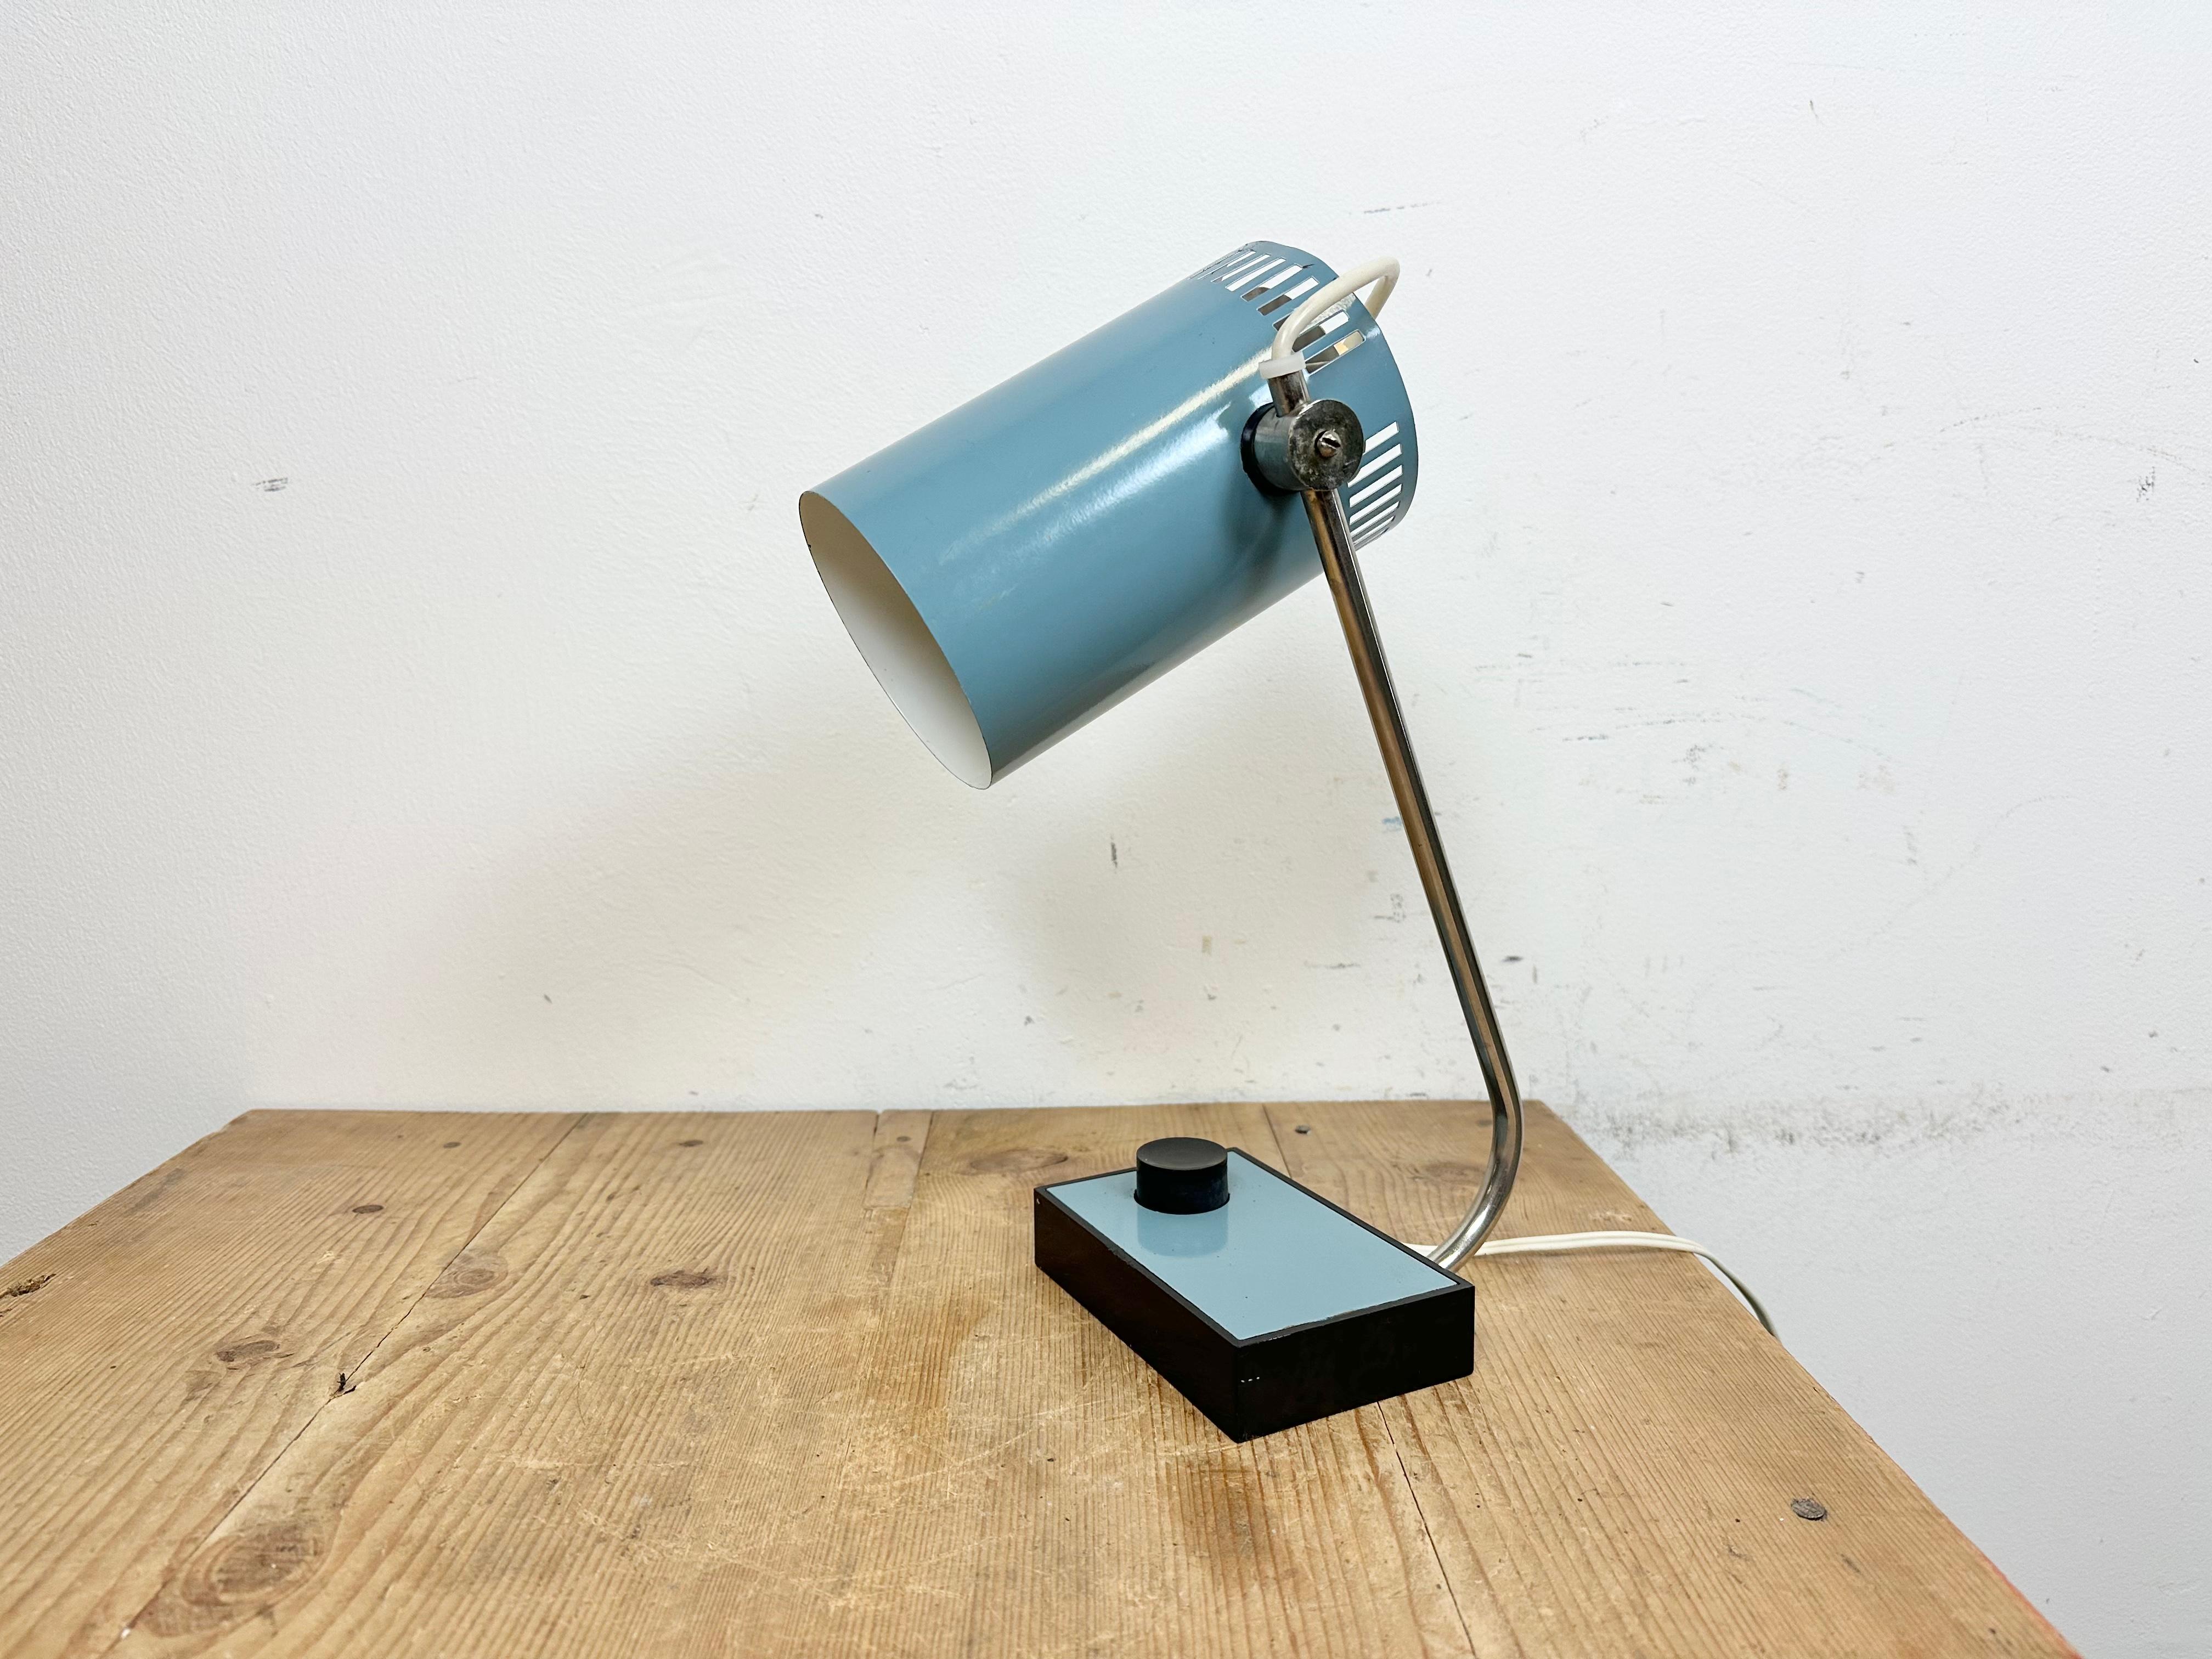 Lampe de table vintage bleue fabriquée dans l'ancienne Tchécoslovaquie au cours des années 1960. Elle se compose d'une base en bakélite avec interrupteur, d'un abat-jour réglable en métal bleu et d'un bras chromé. La douille d'origine nécessite des